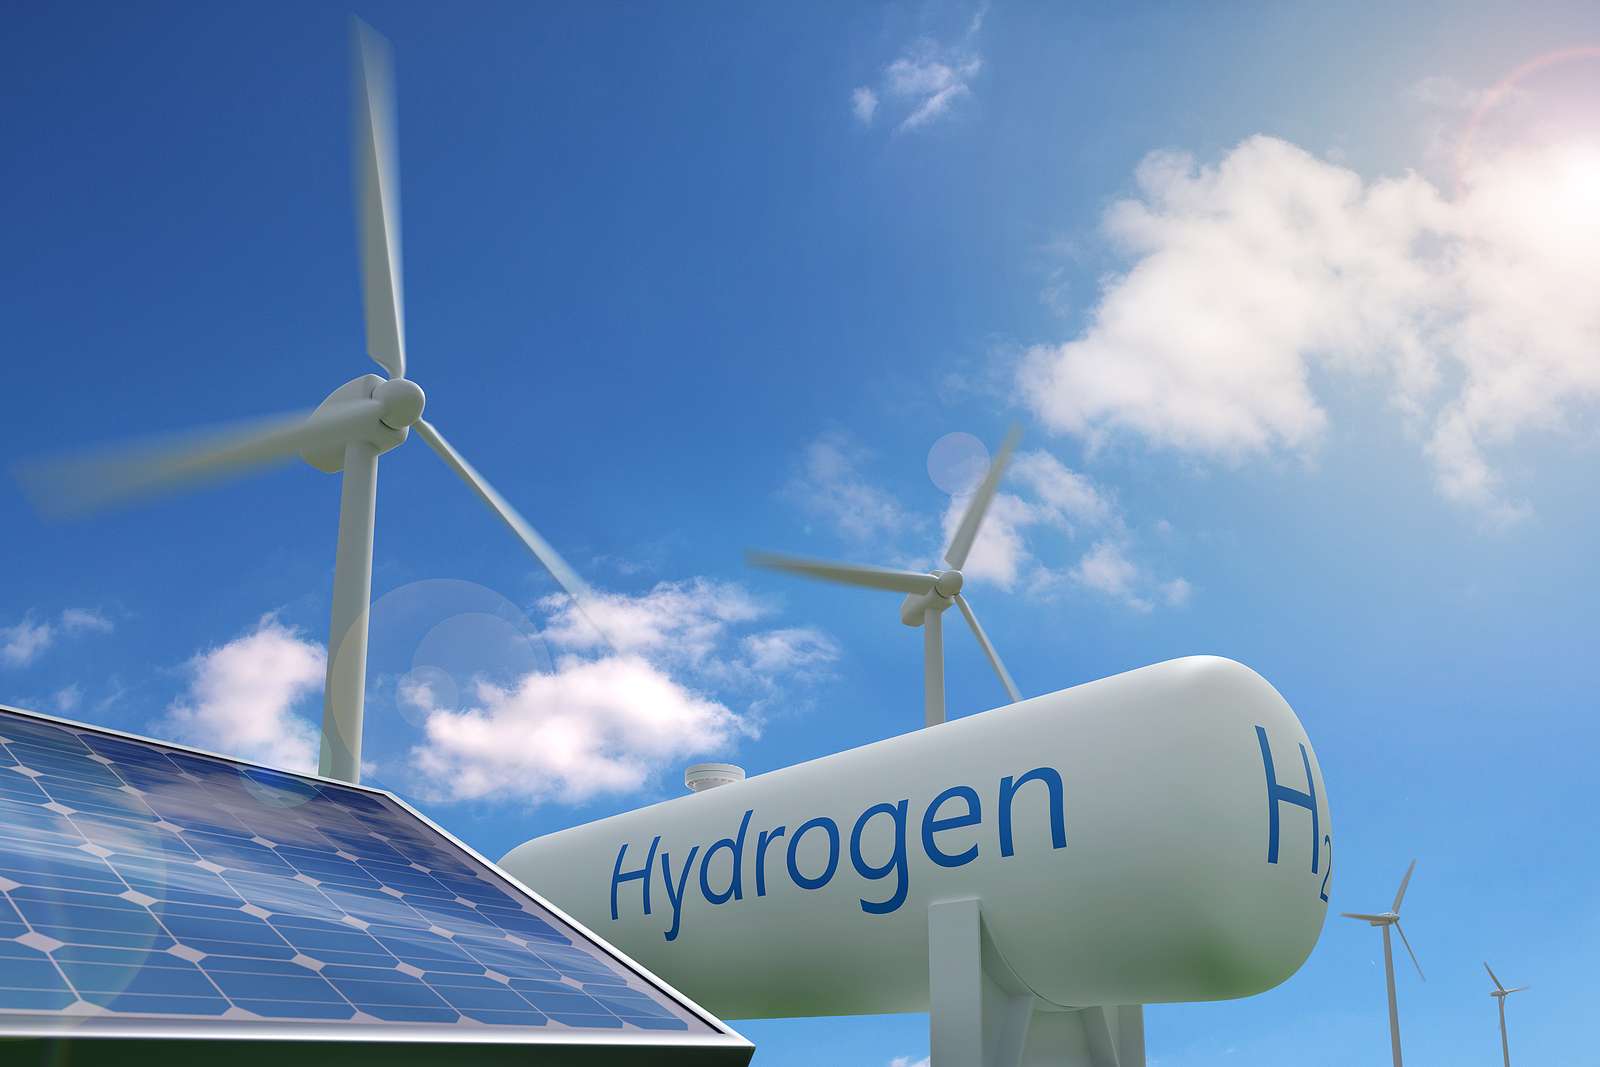 مشروع للهيدروجين- الصورة من موقع إنرجي كابيتال آند باور